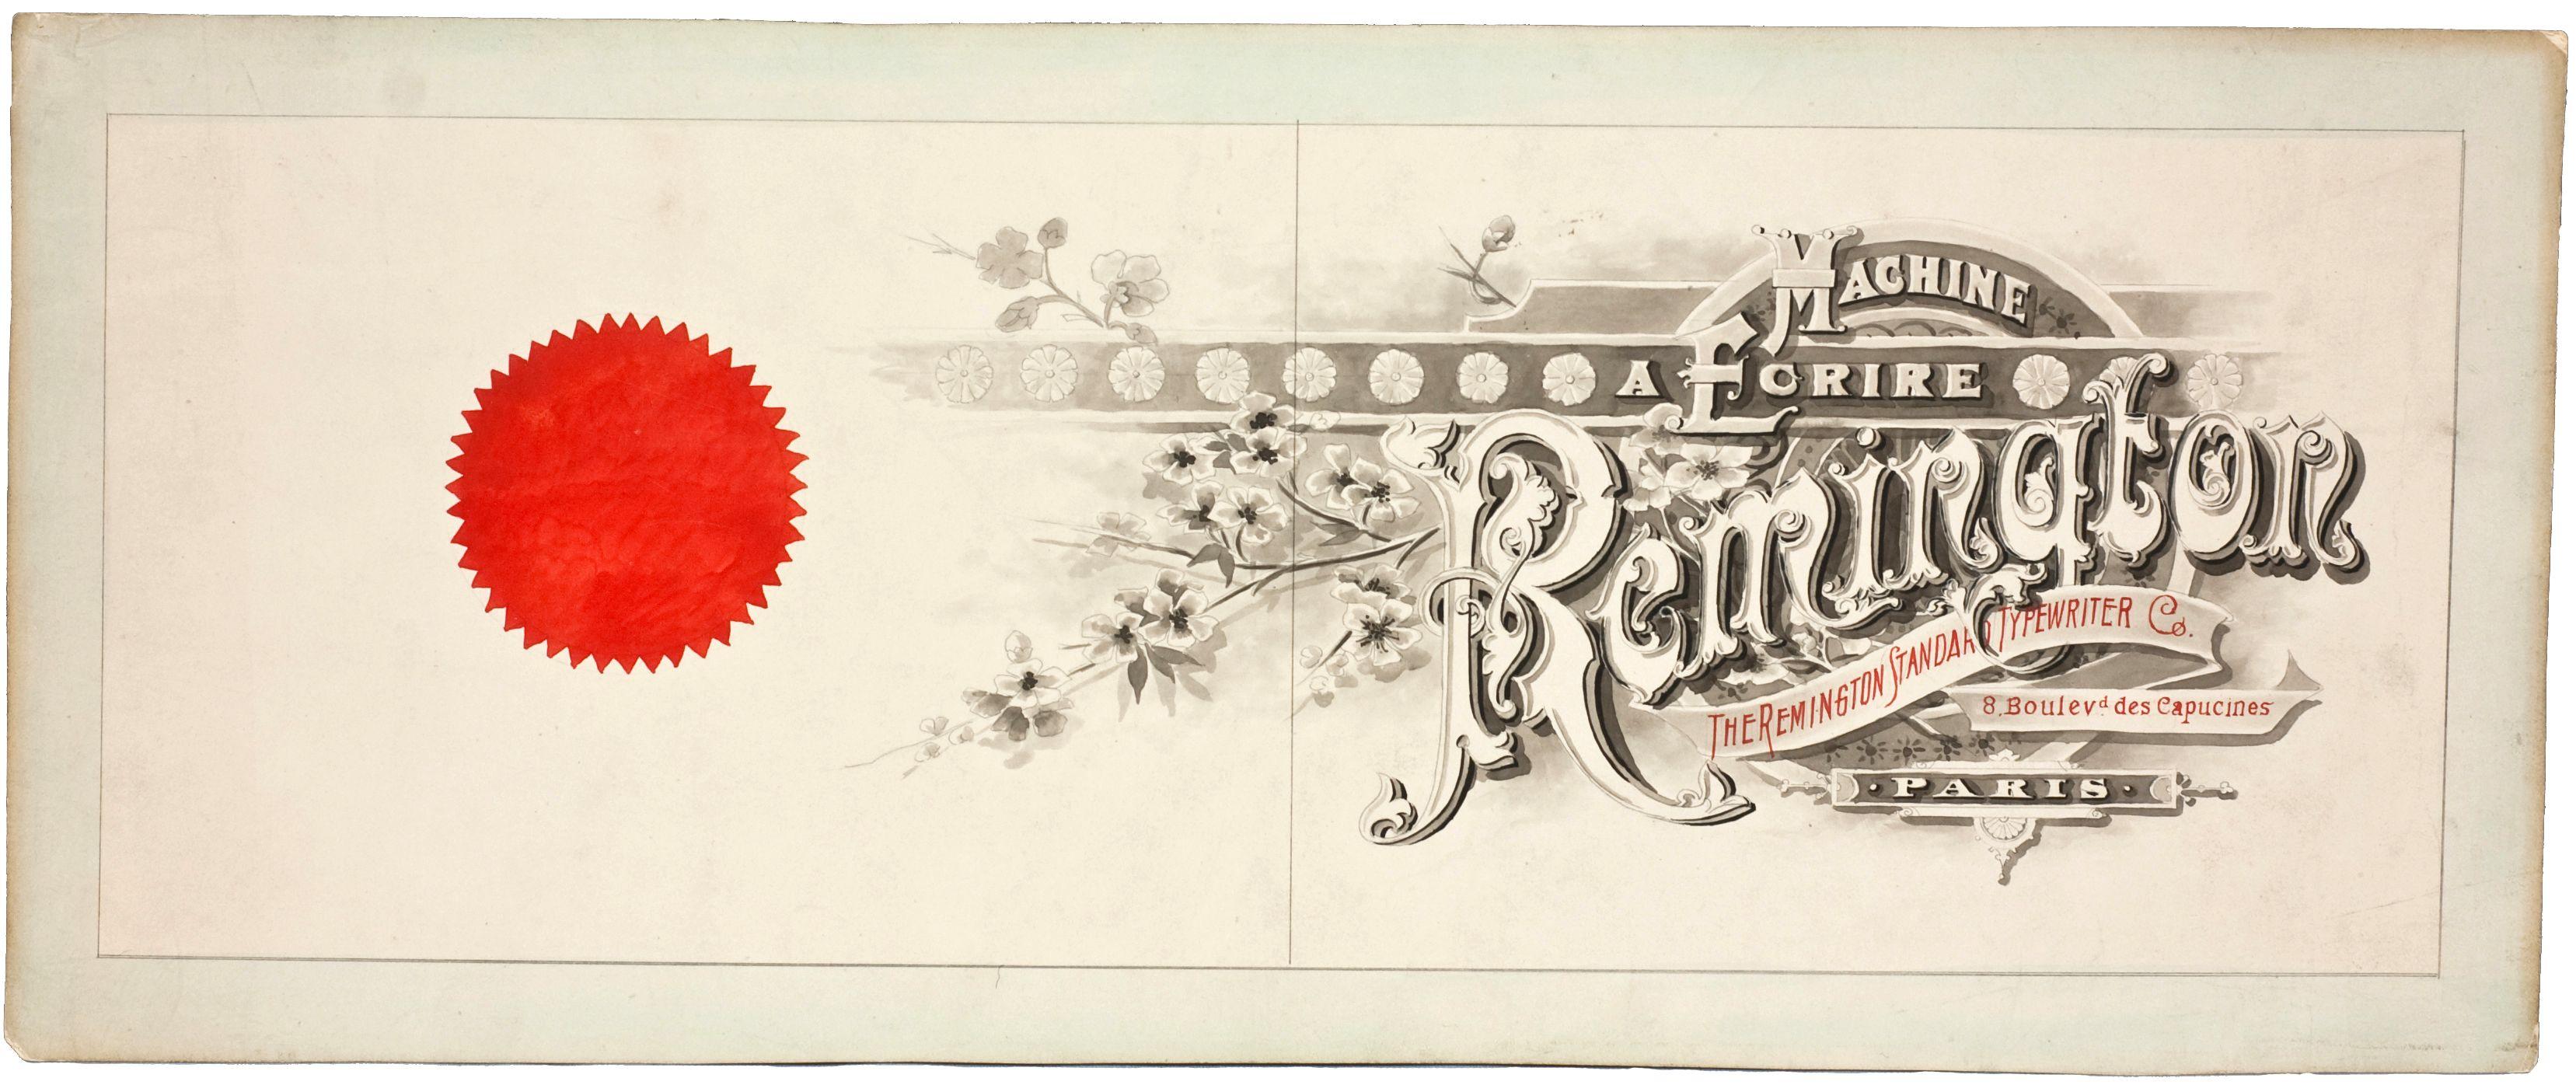 Vintage Remington Logo - Finding Typewriter History in Paris | Parisian Fields